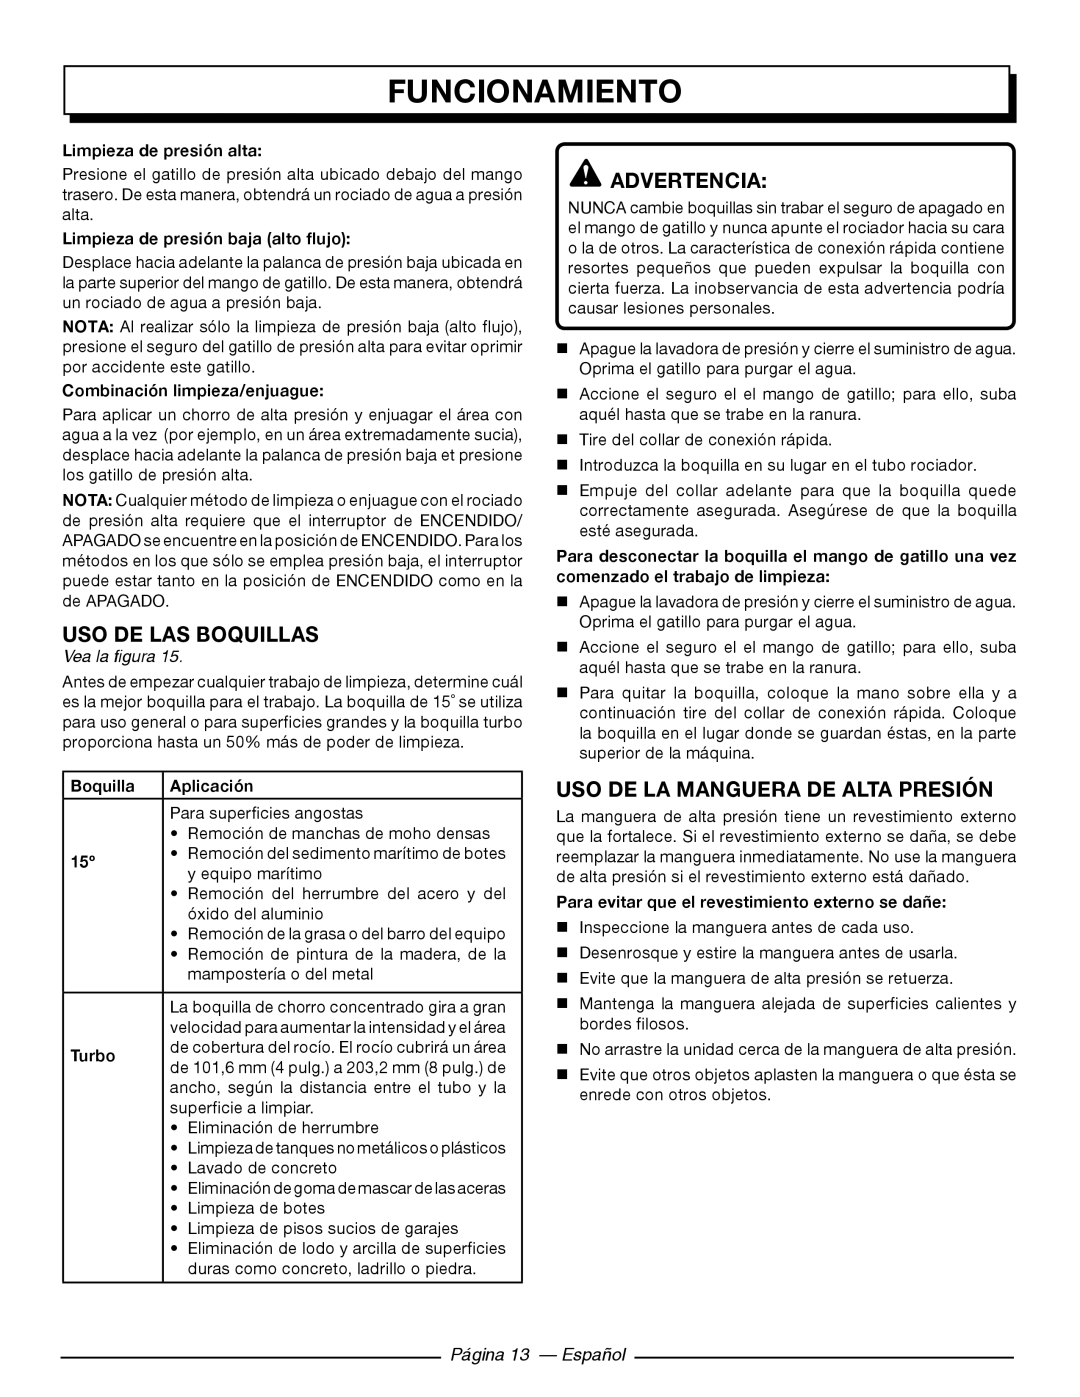 Homelite UT80720 Uso De Las Boquillas, Uso De La Manguera De Alta Presión, Página 13 - Español, Funcionamiento 